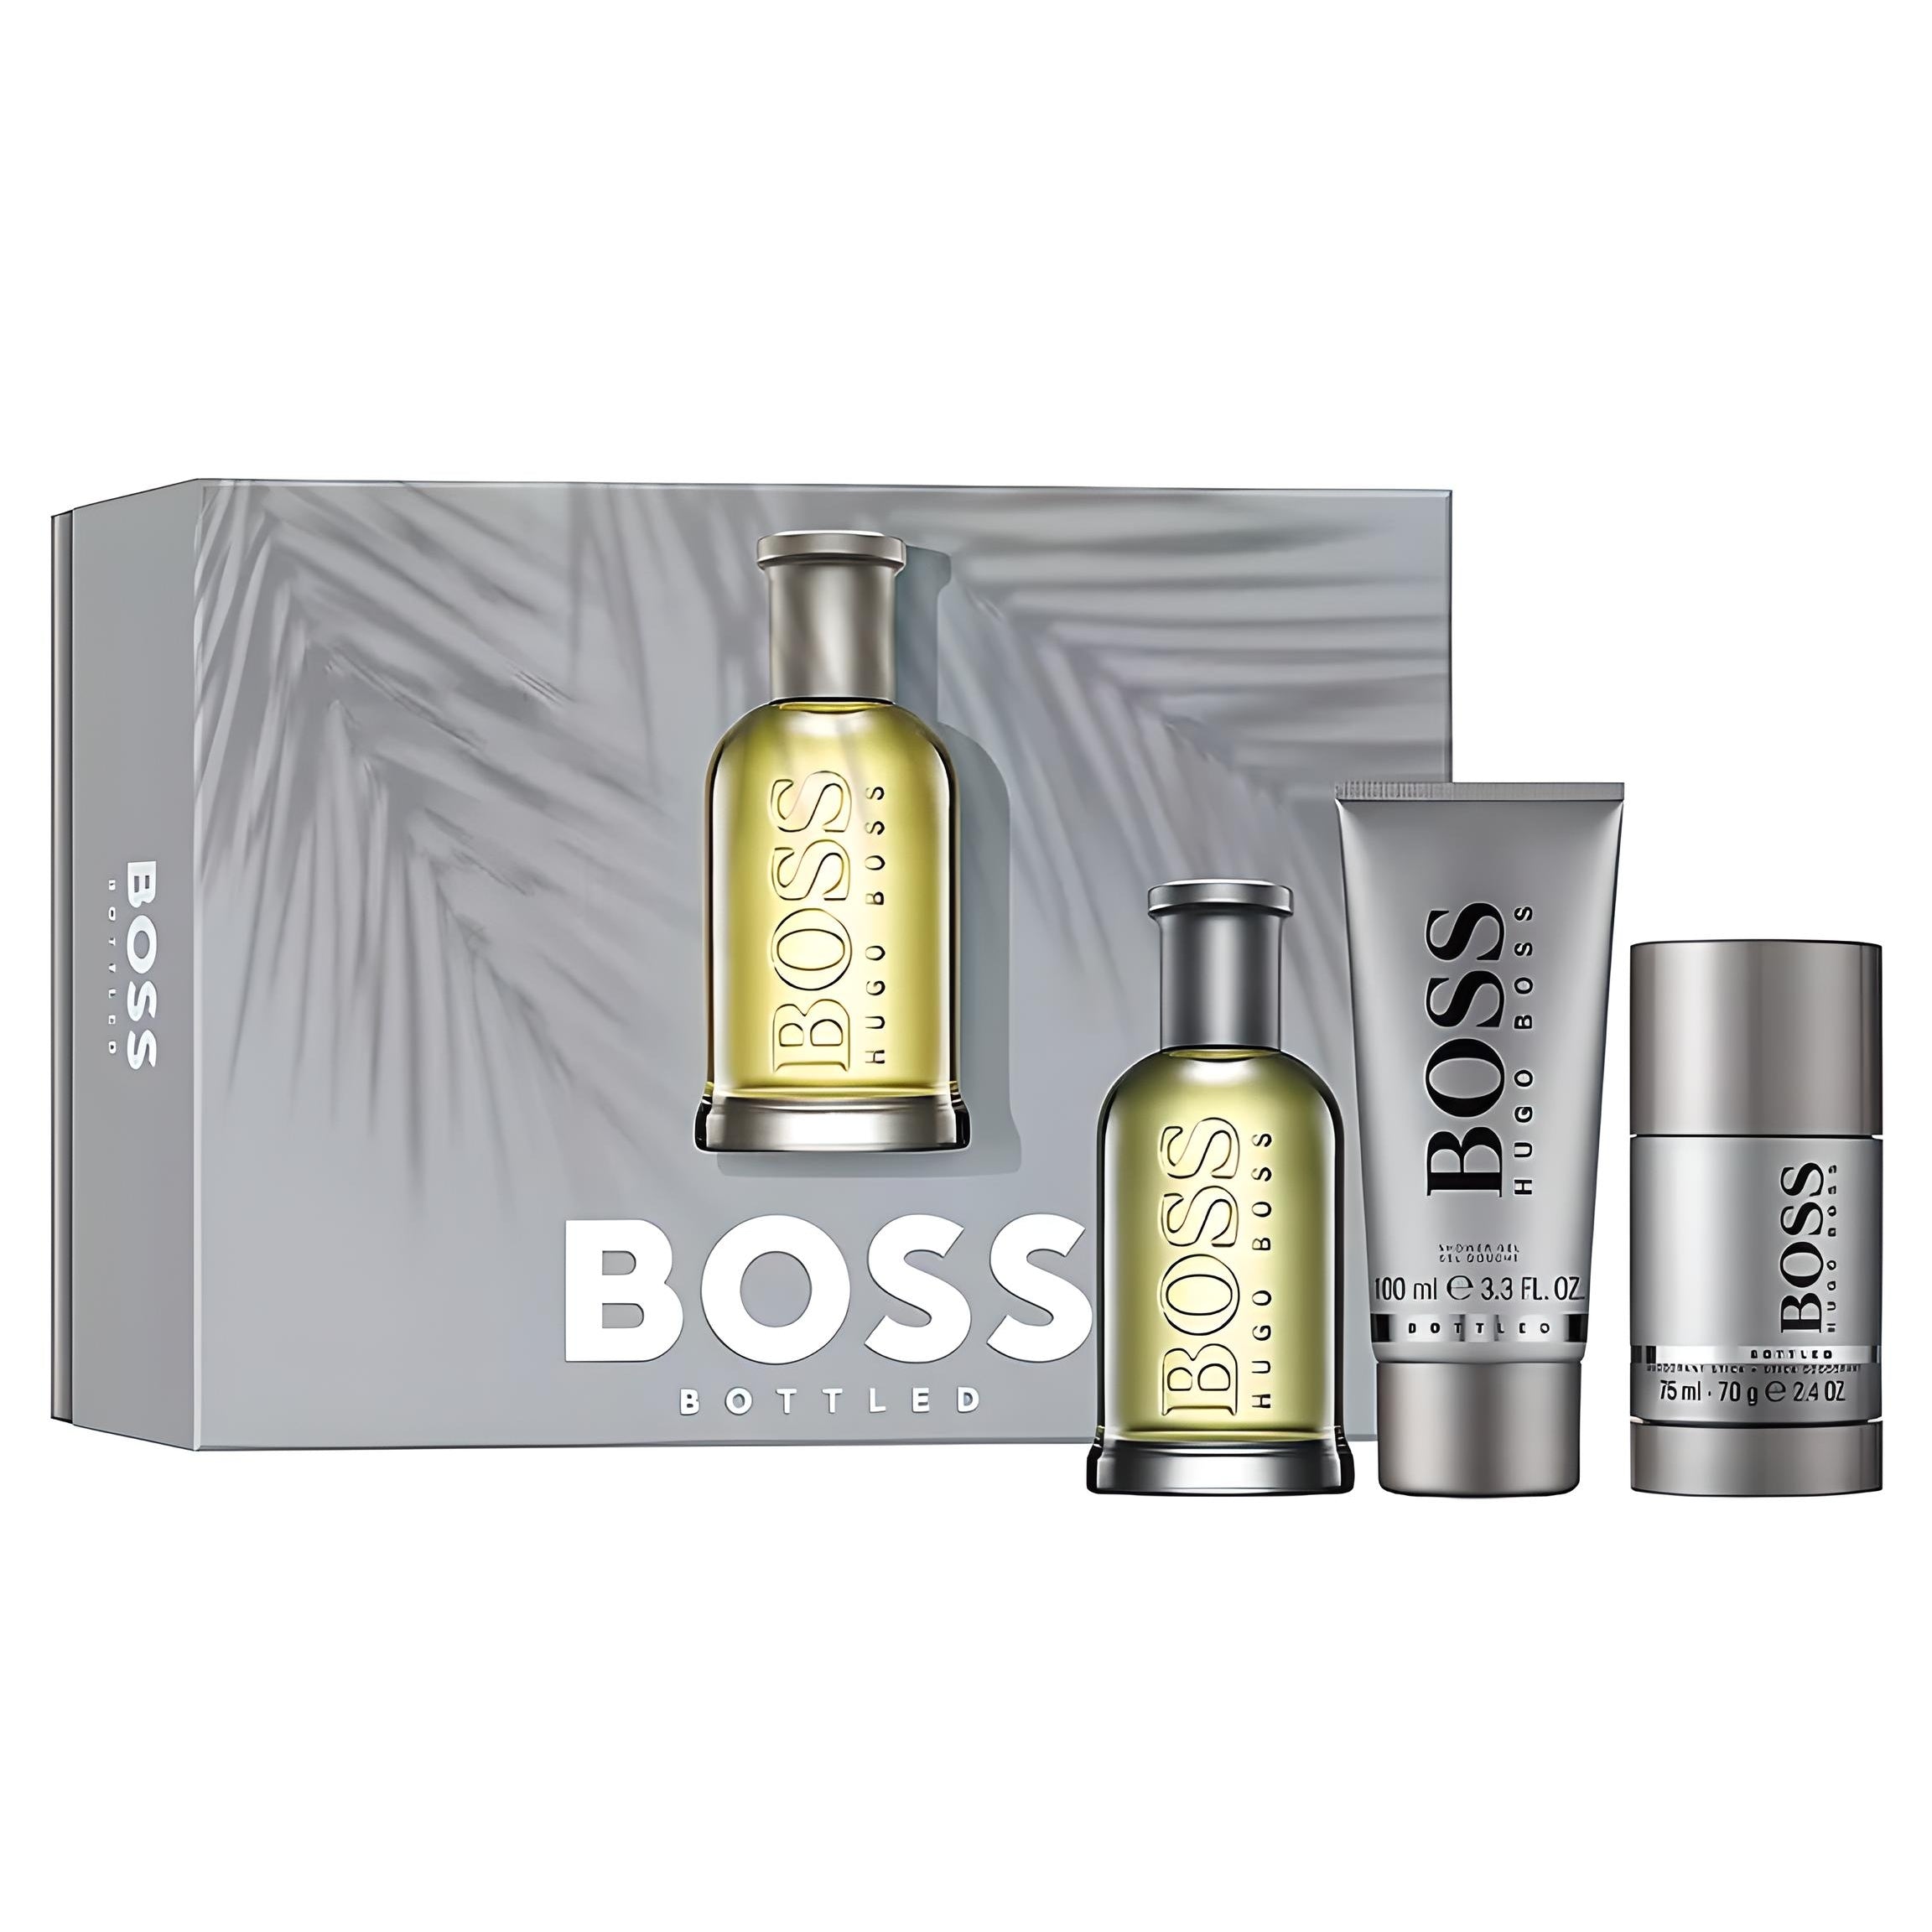 HUGO BOSS BOSS BOTTLED EDT, Deo und Duschgel Geschenkset Parfum-Set HUGO BOSS   